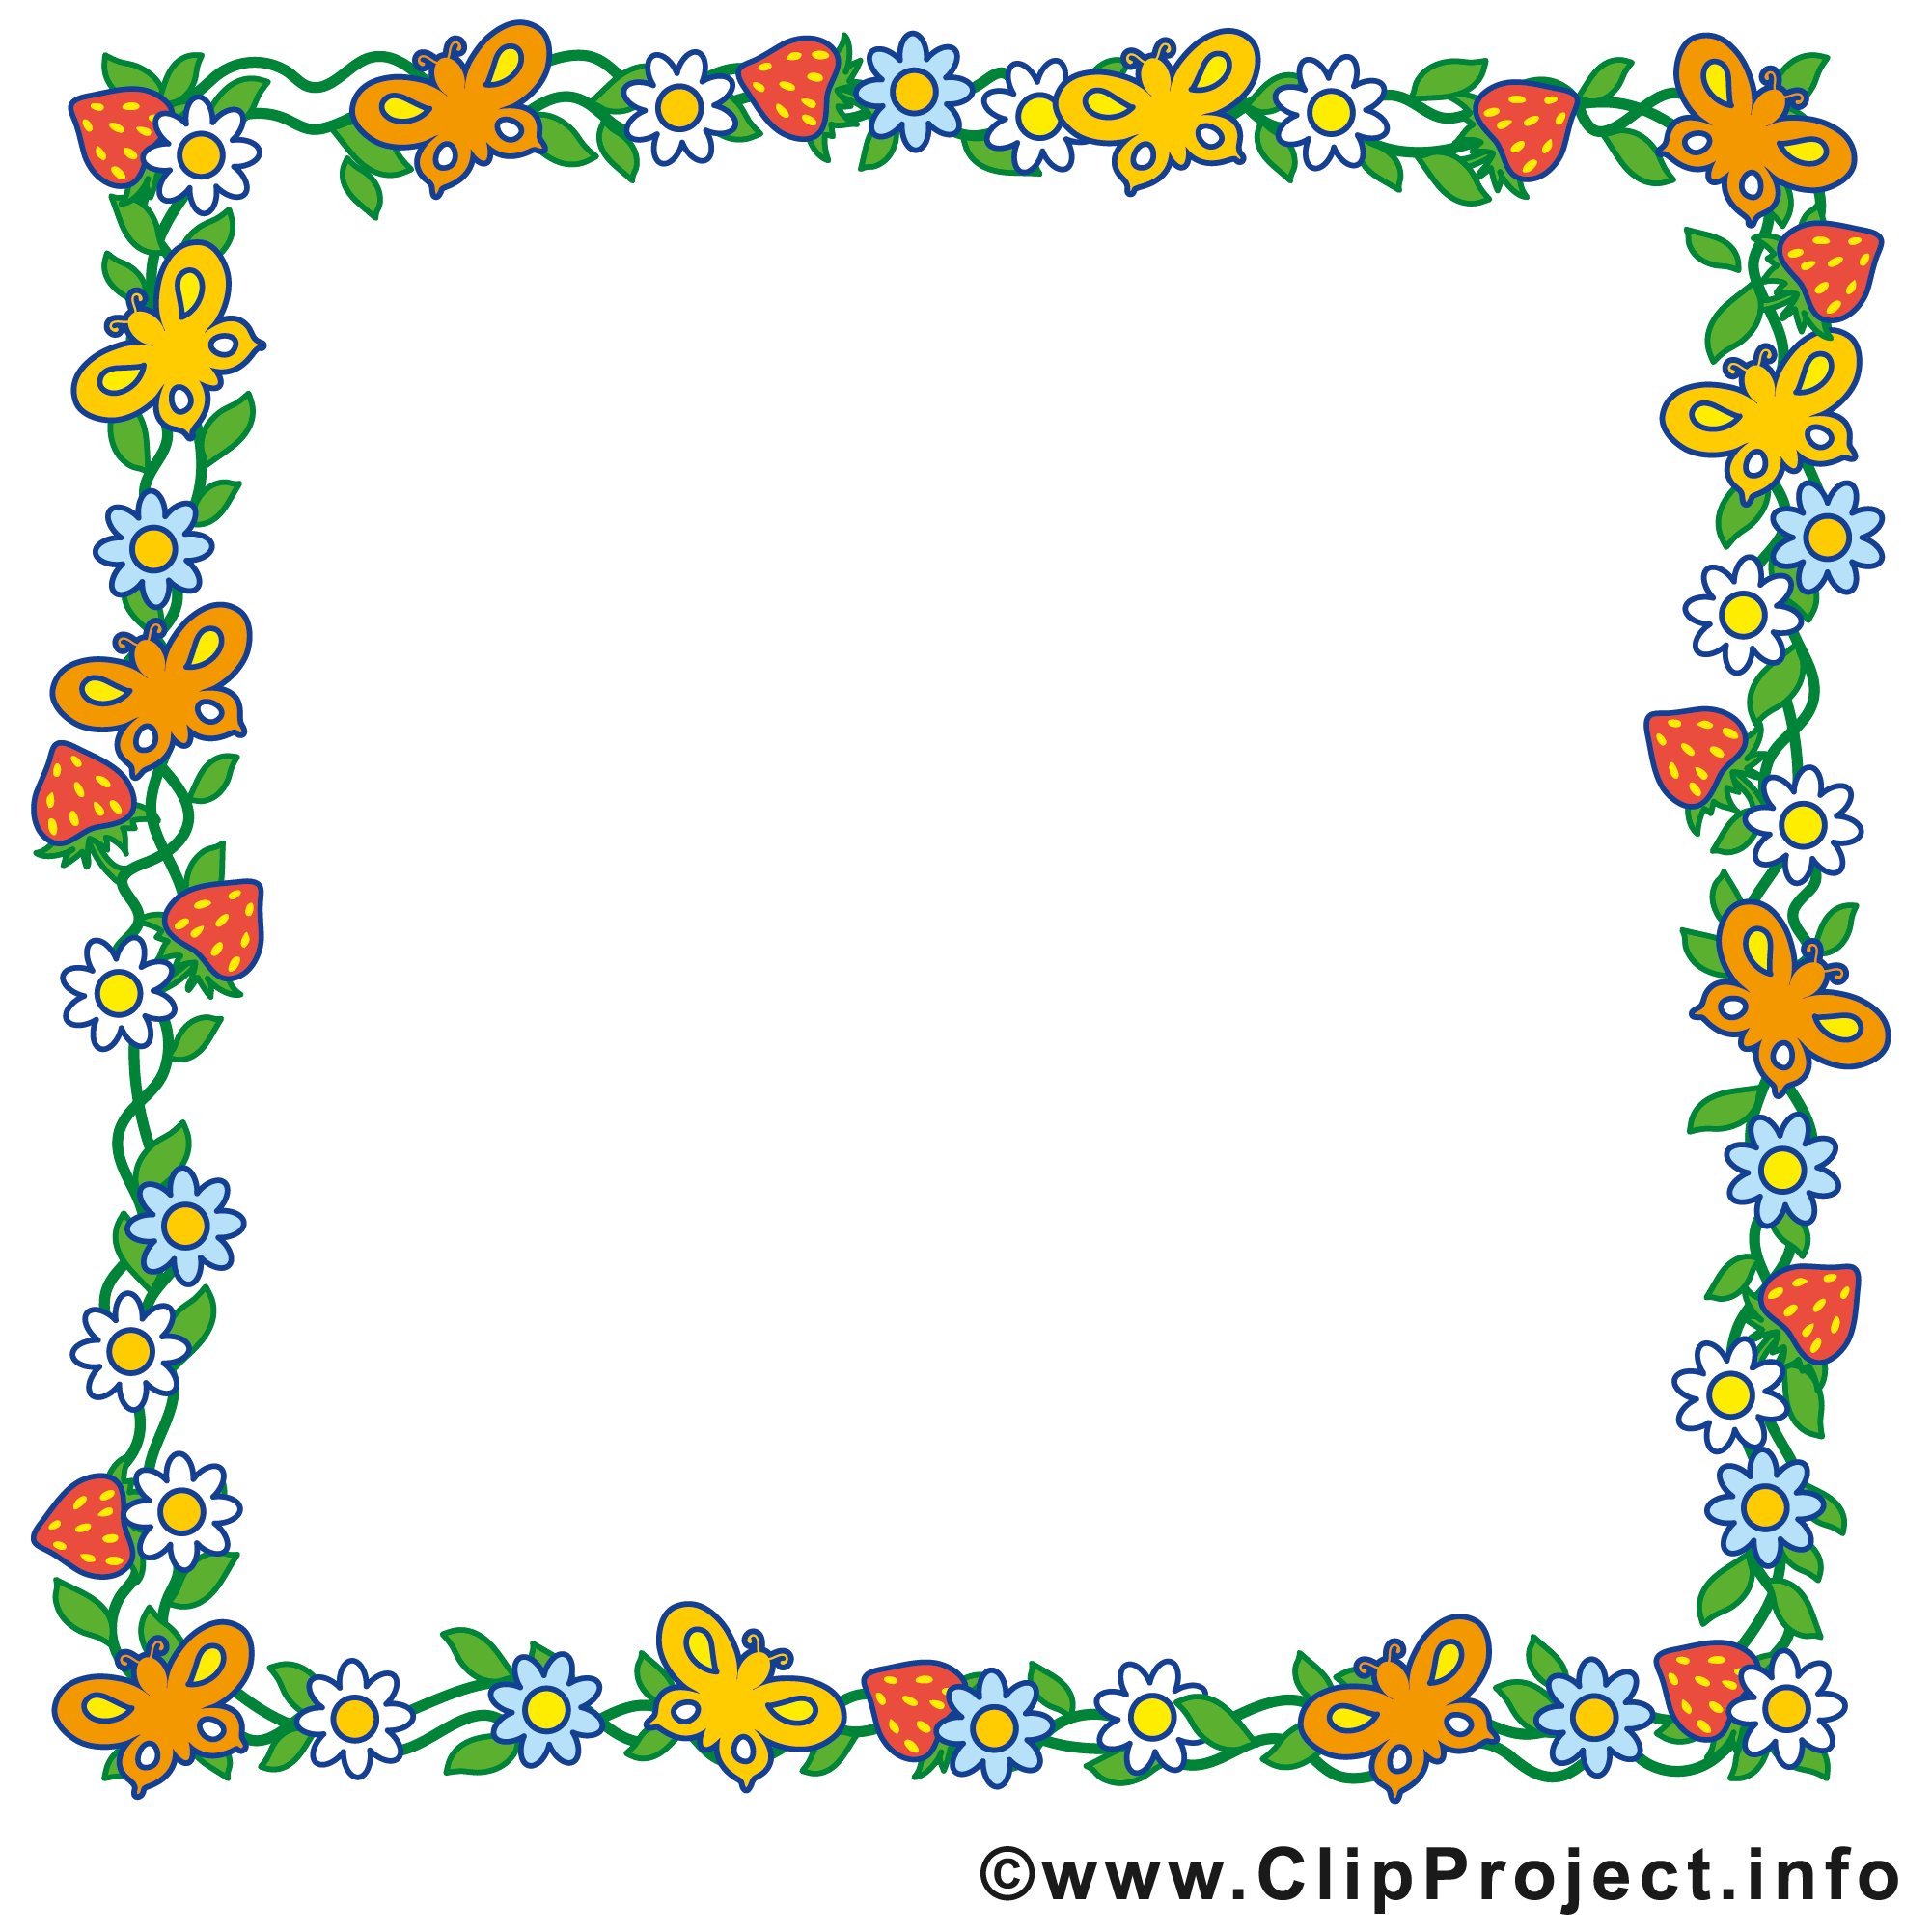 Clip art gratuit rectangle – Cadre images